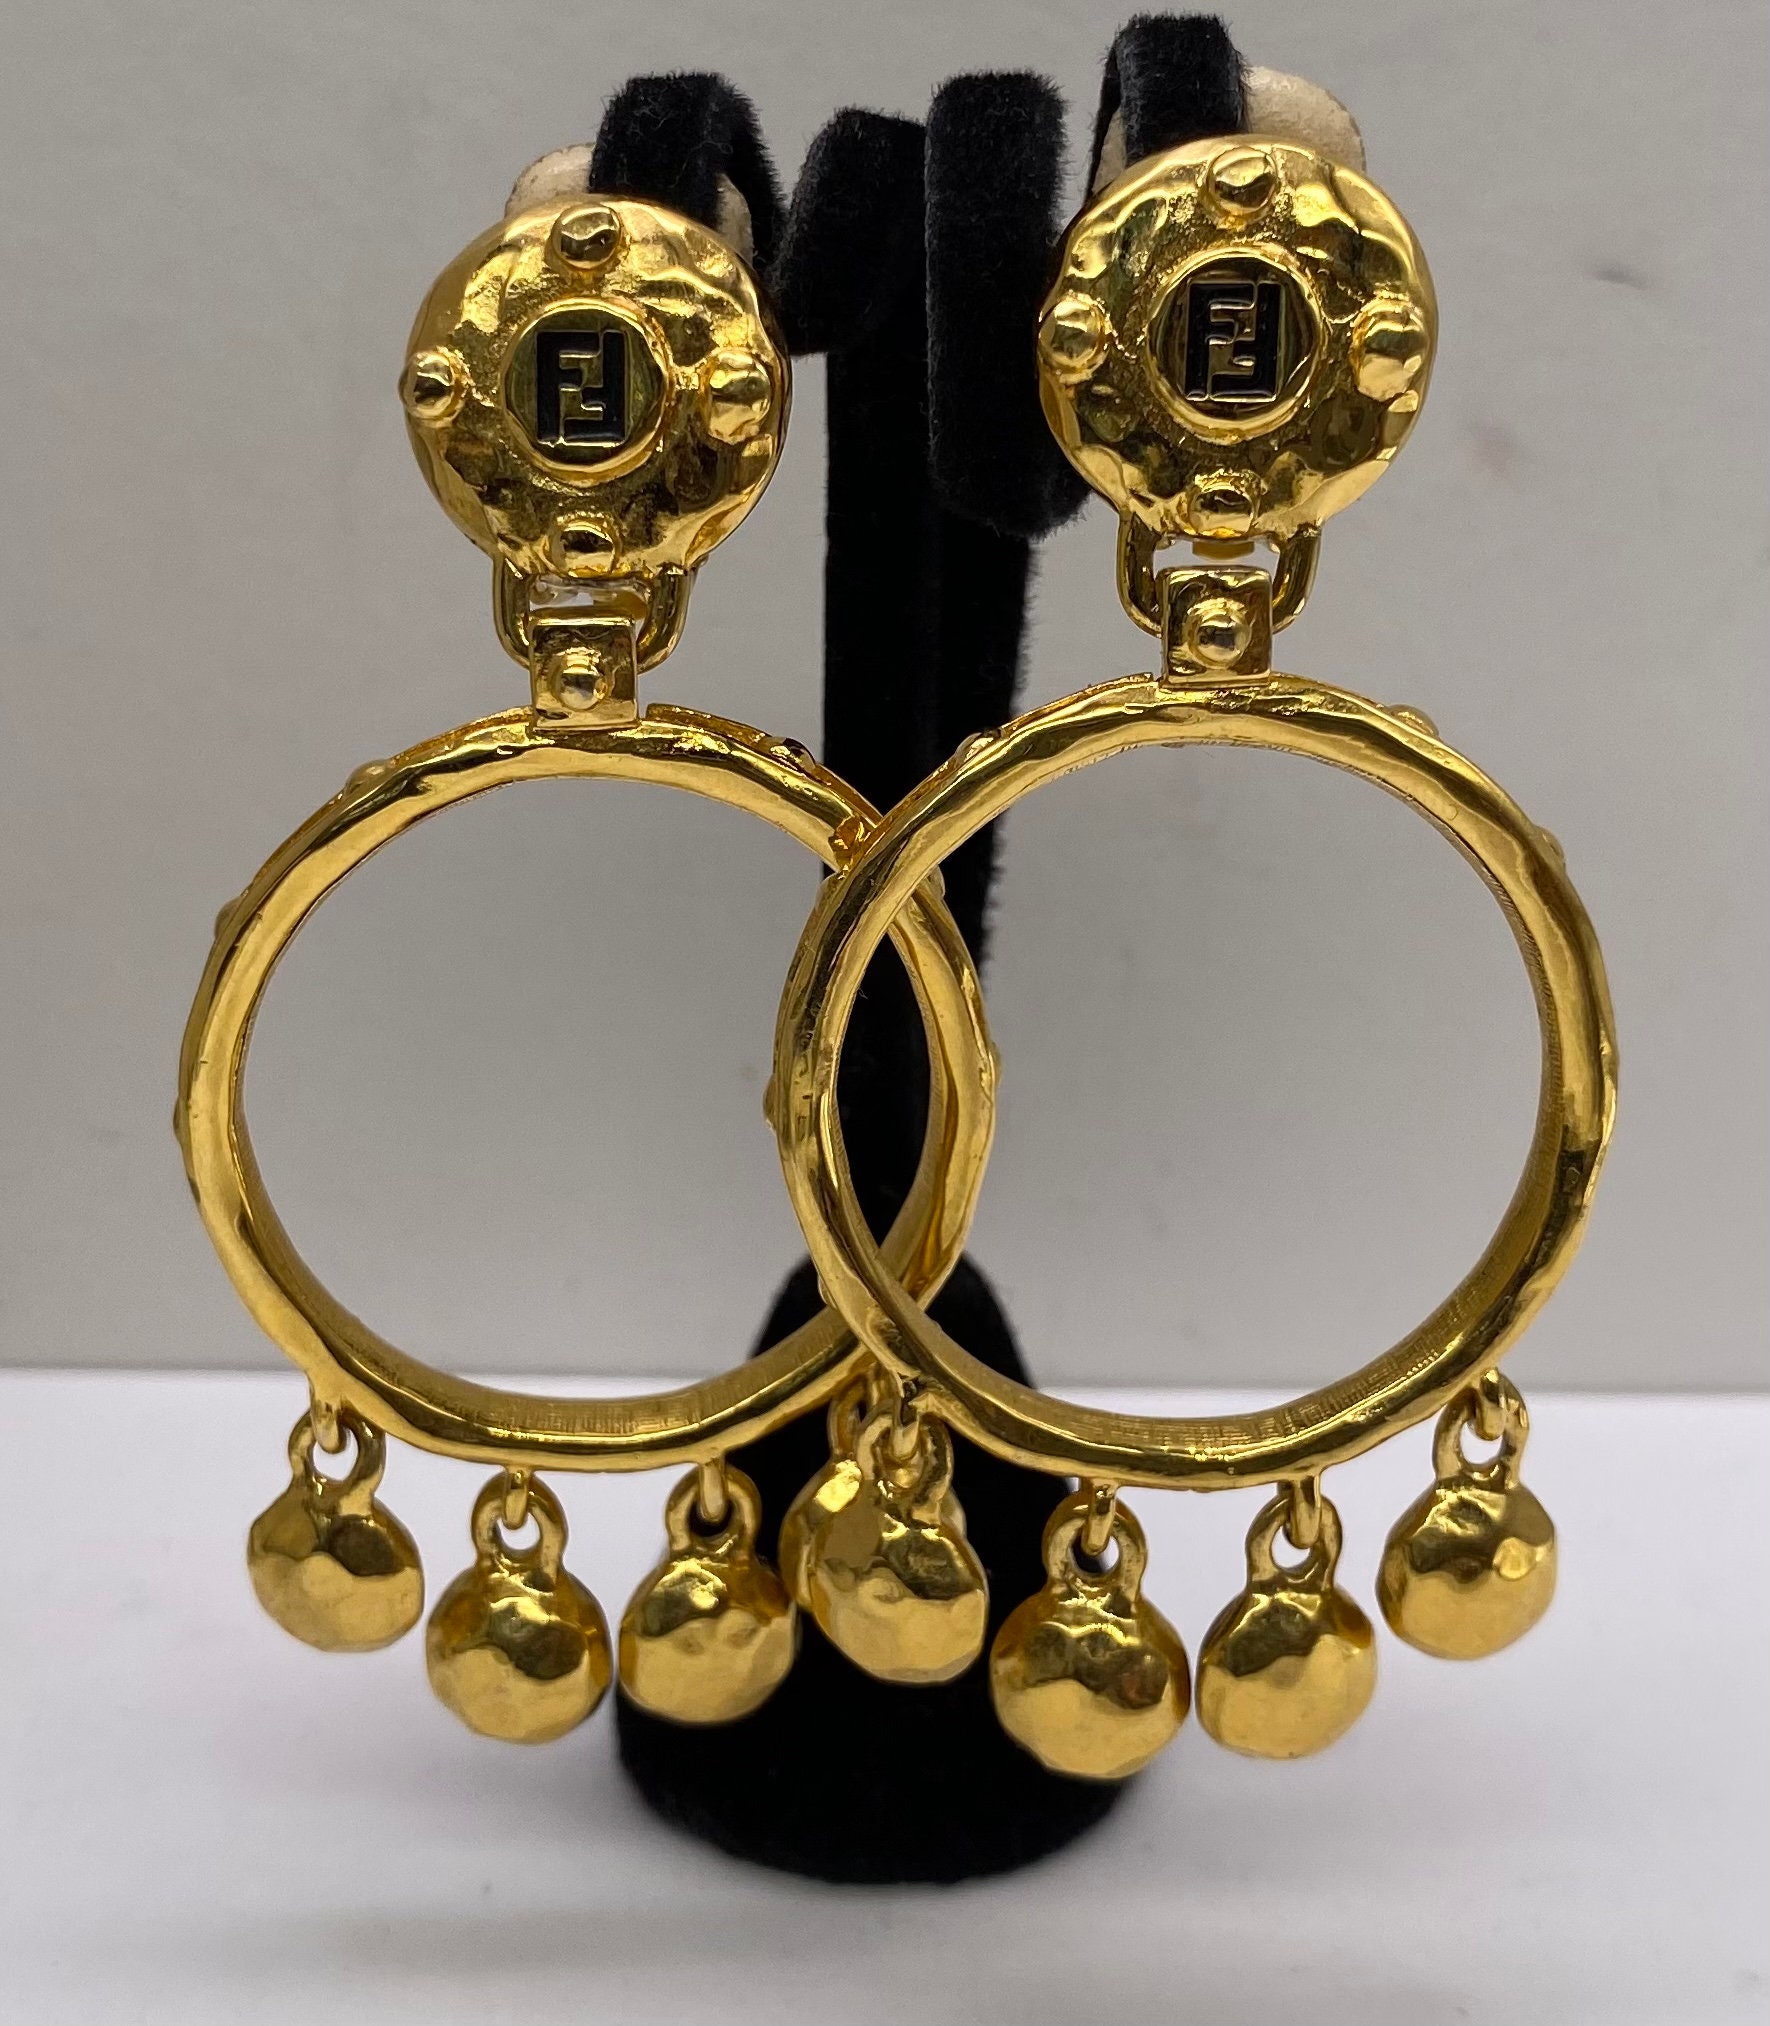 FENDI Metal FF Hoop Earrings Gold 1273792